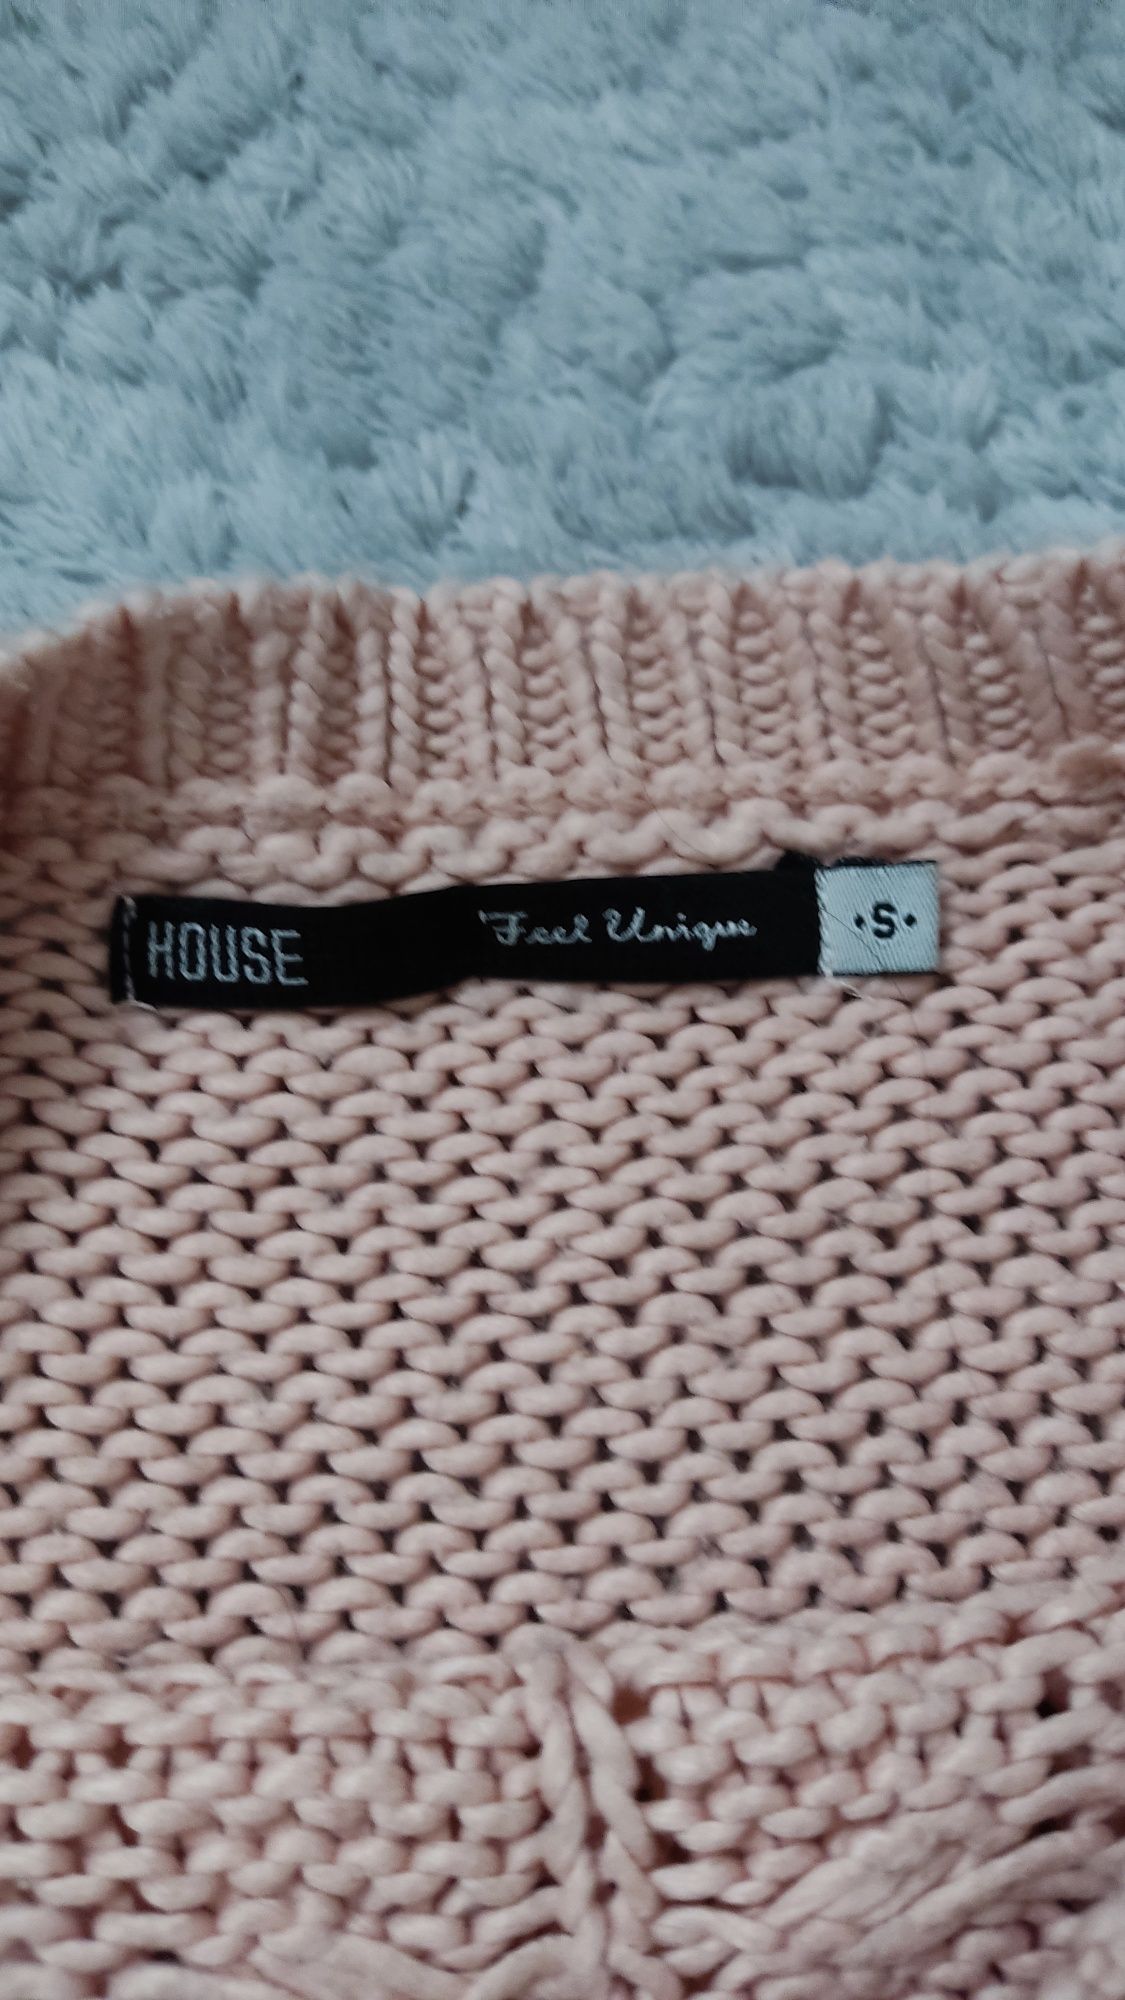 House sweter zestaw 2 sztuki